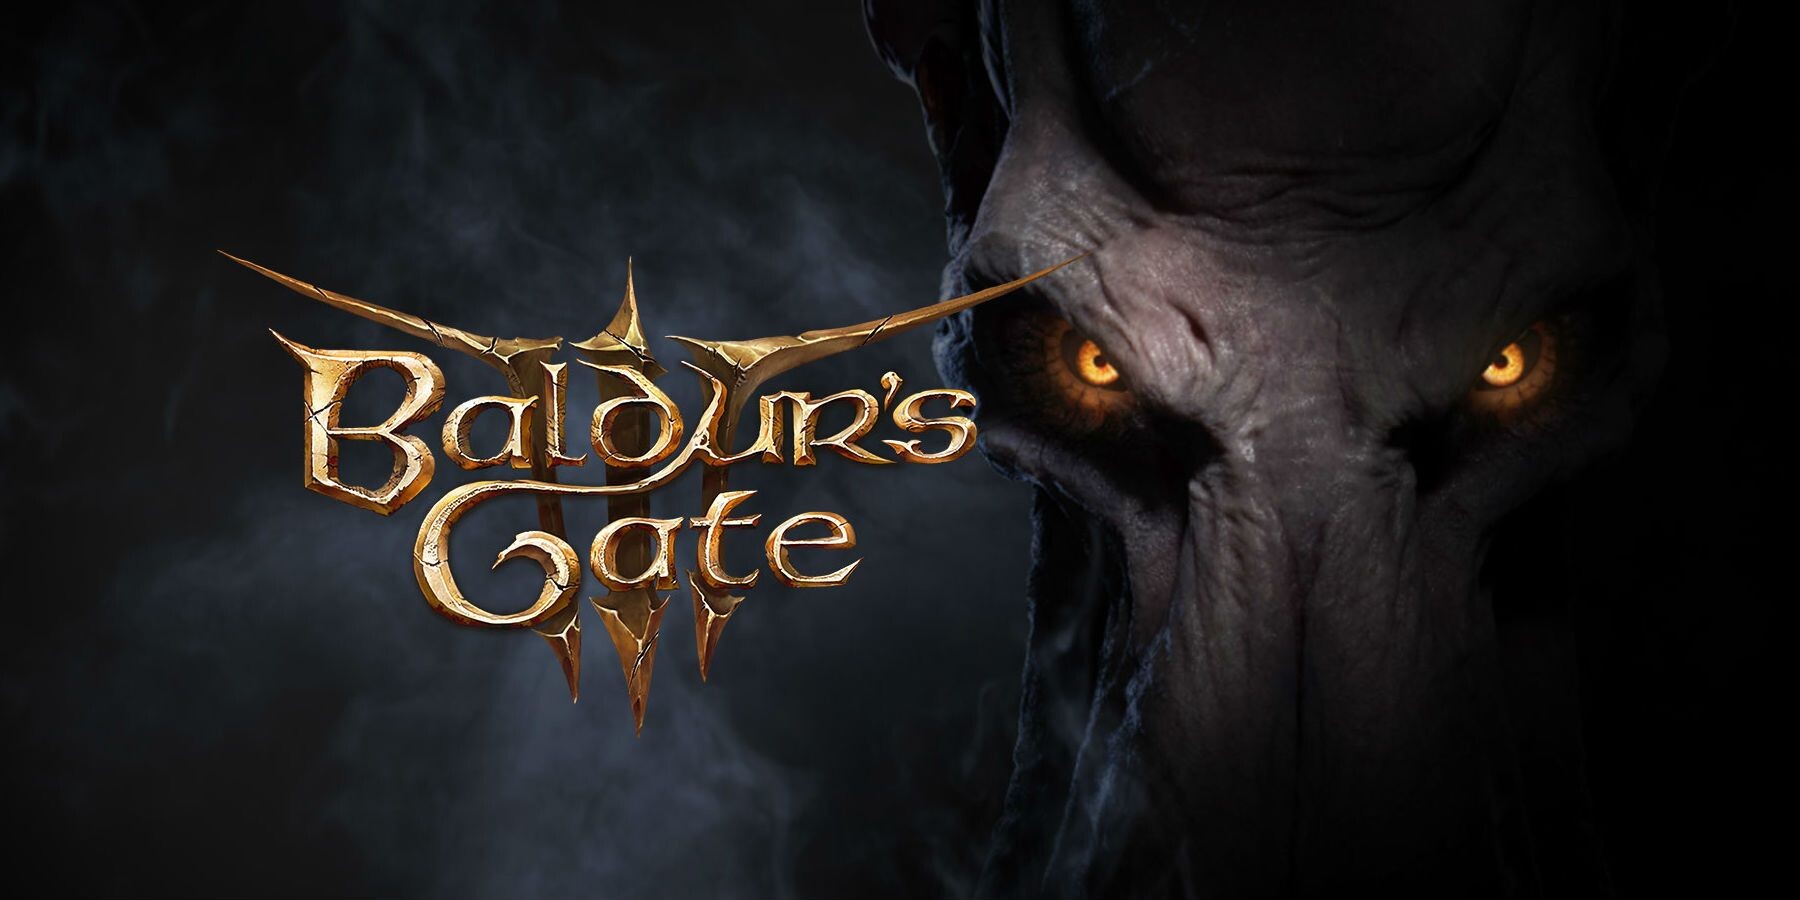 download Baldur’s Gate III